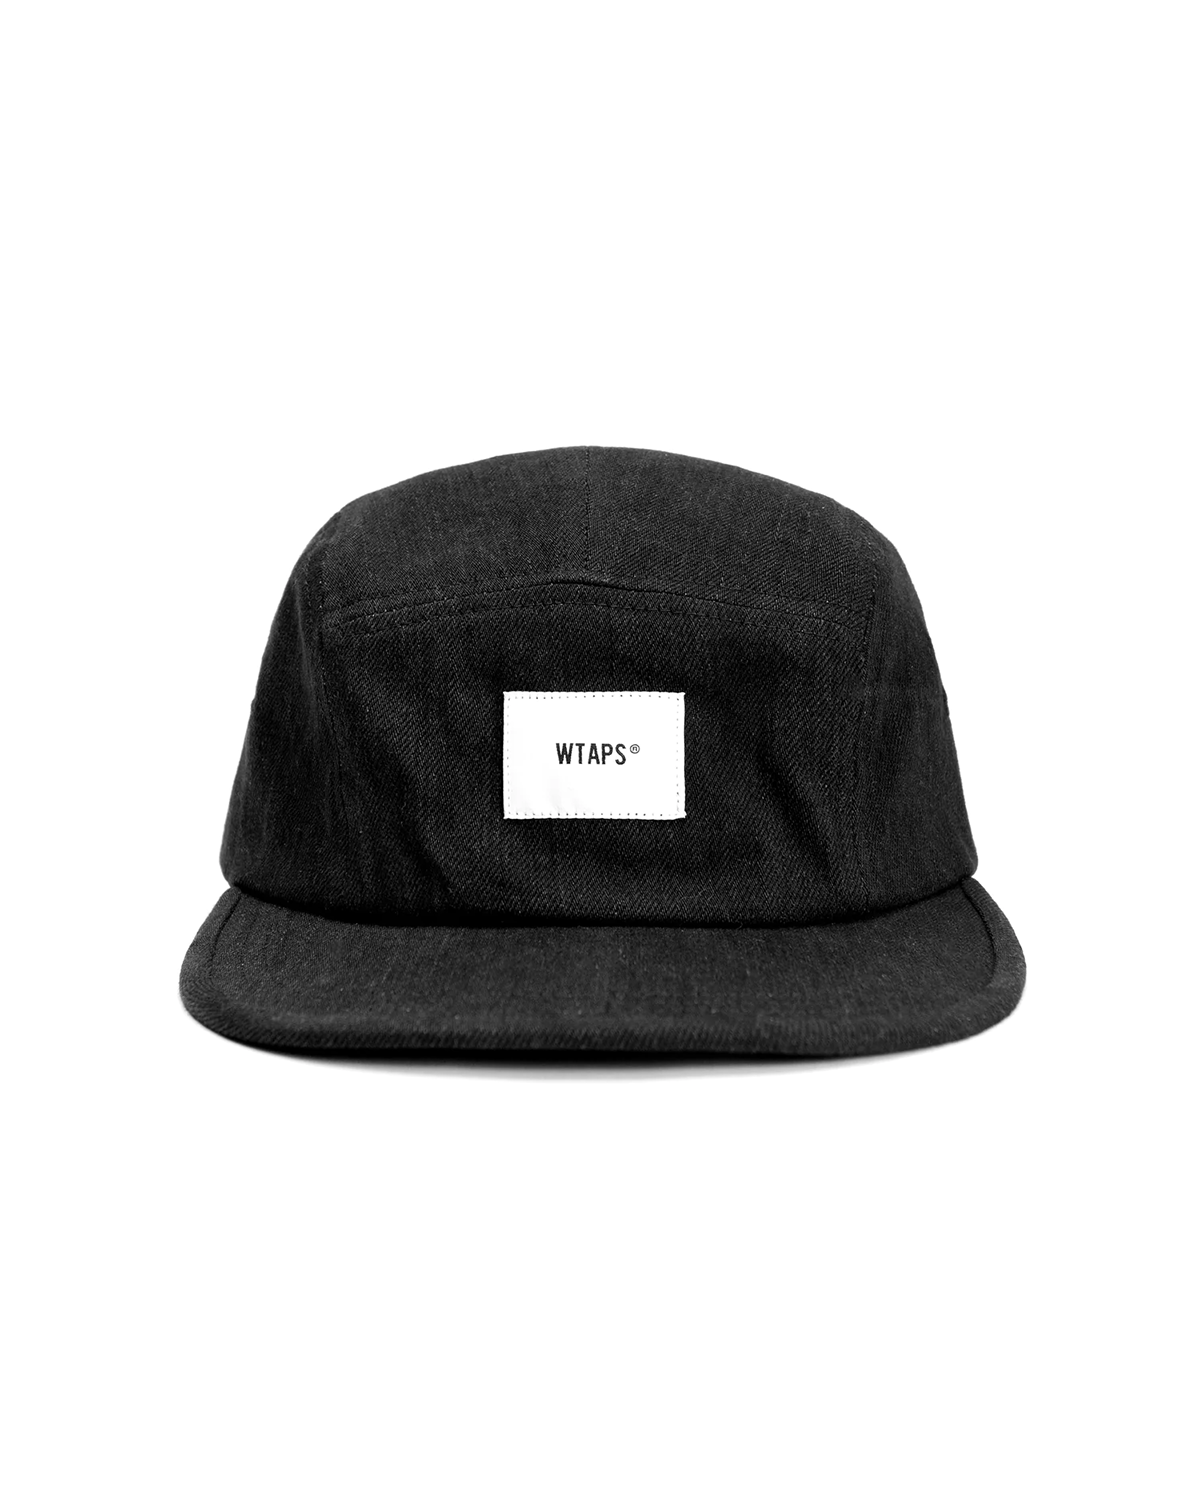 Hat 02 Black